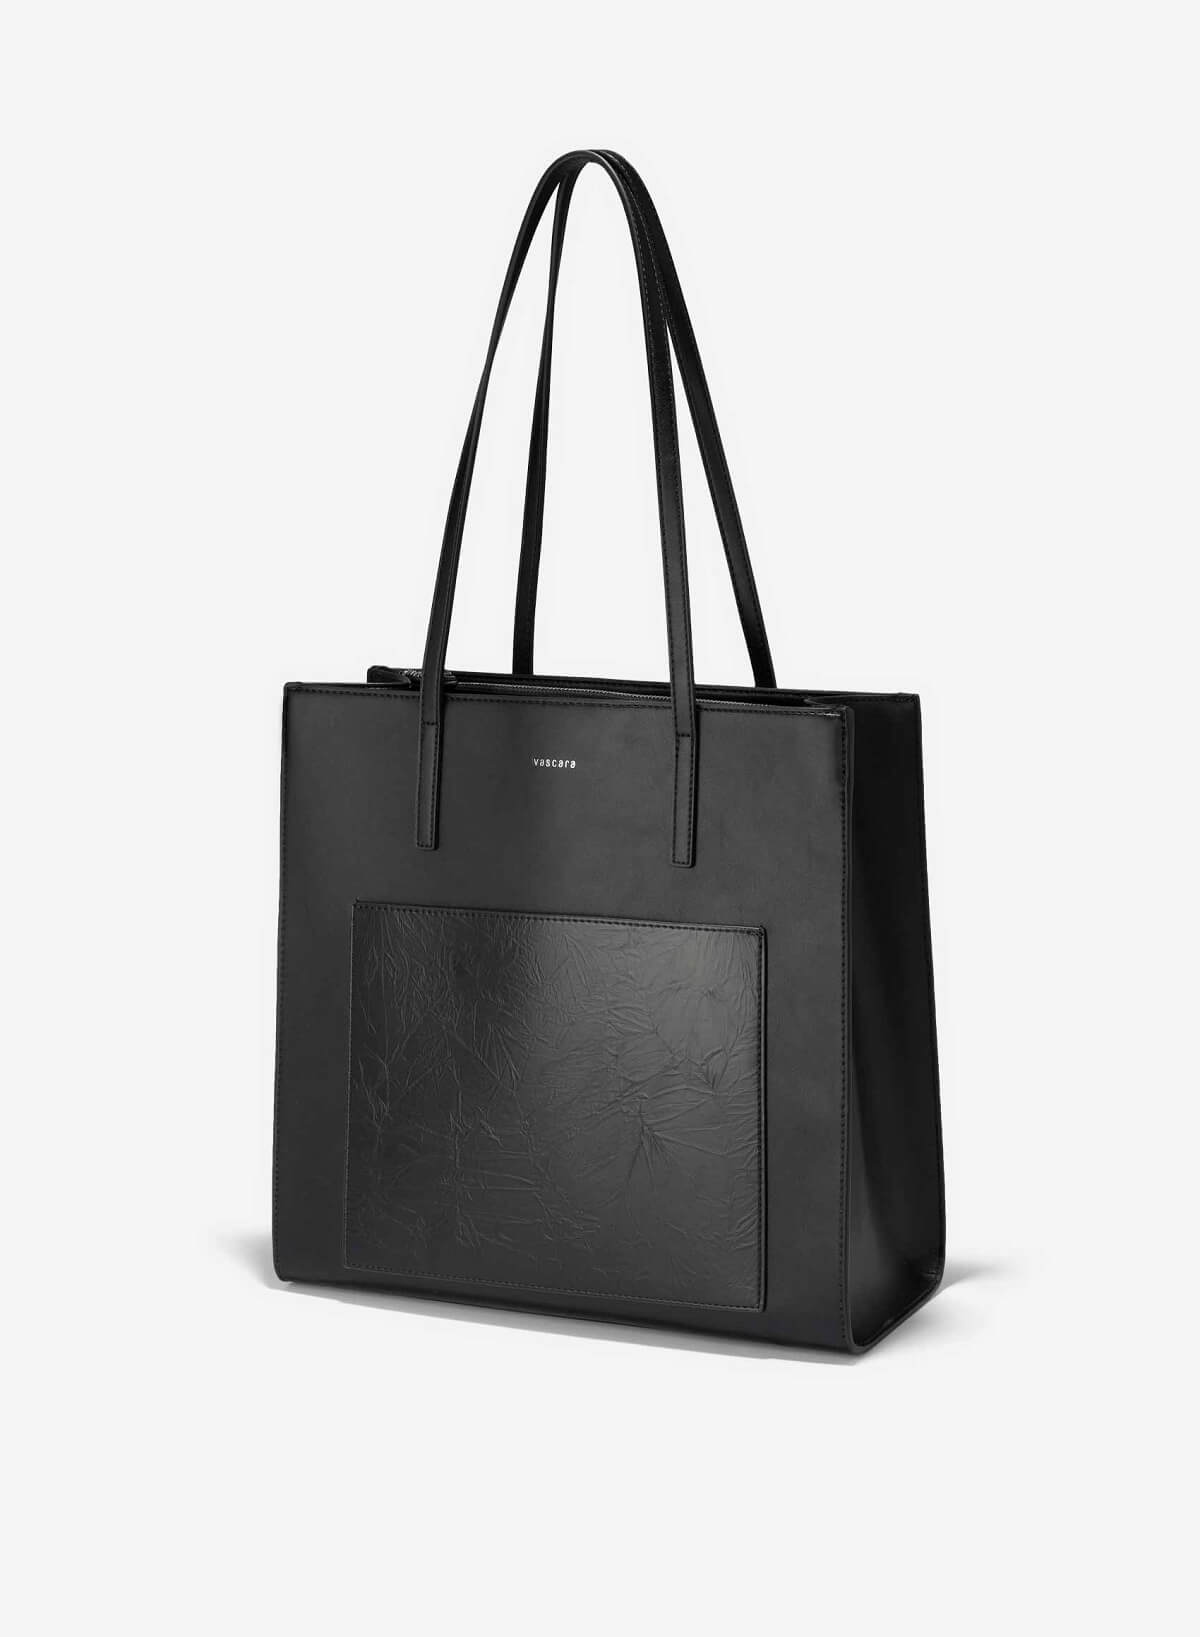 Contrast Leather Tote Bag - TTE 0153 - Black - vascara.com